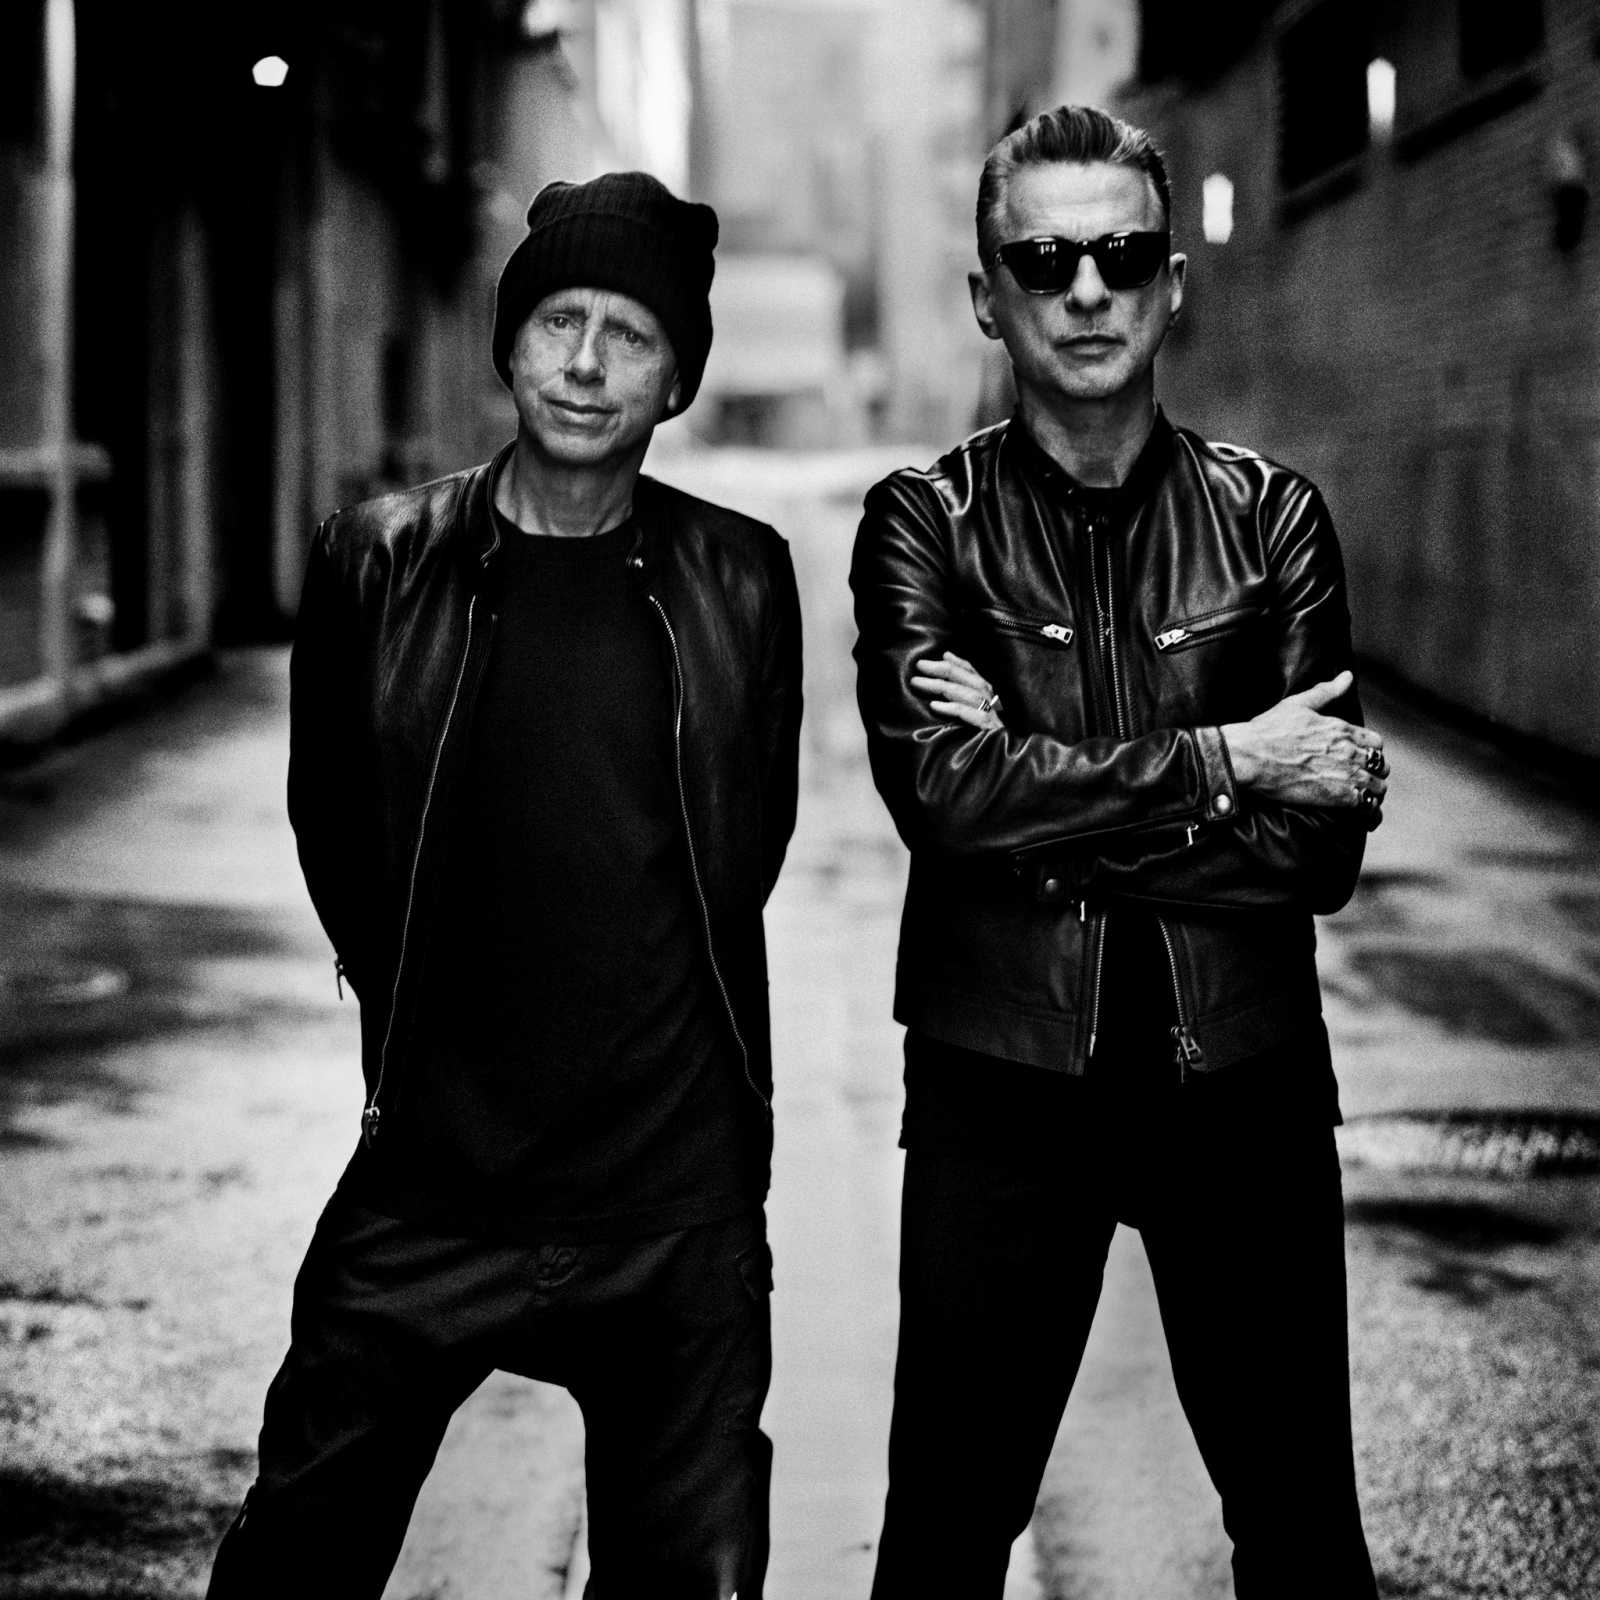 Kép forrása: a Depeche Mode hivatalos Facebook-oldala